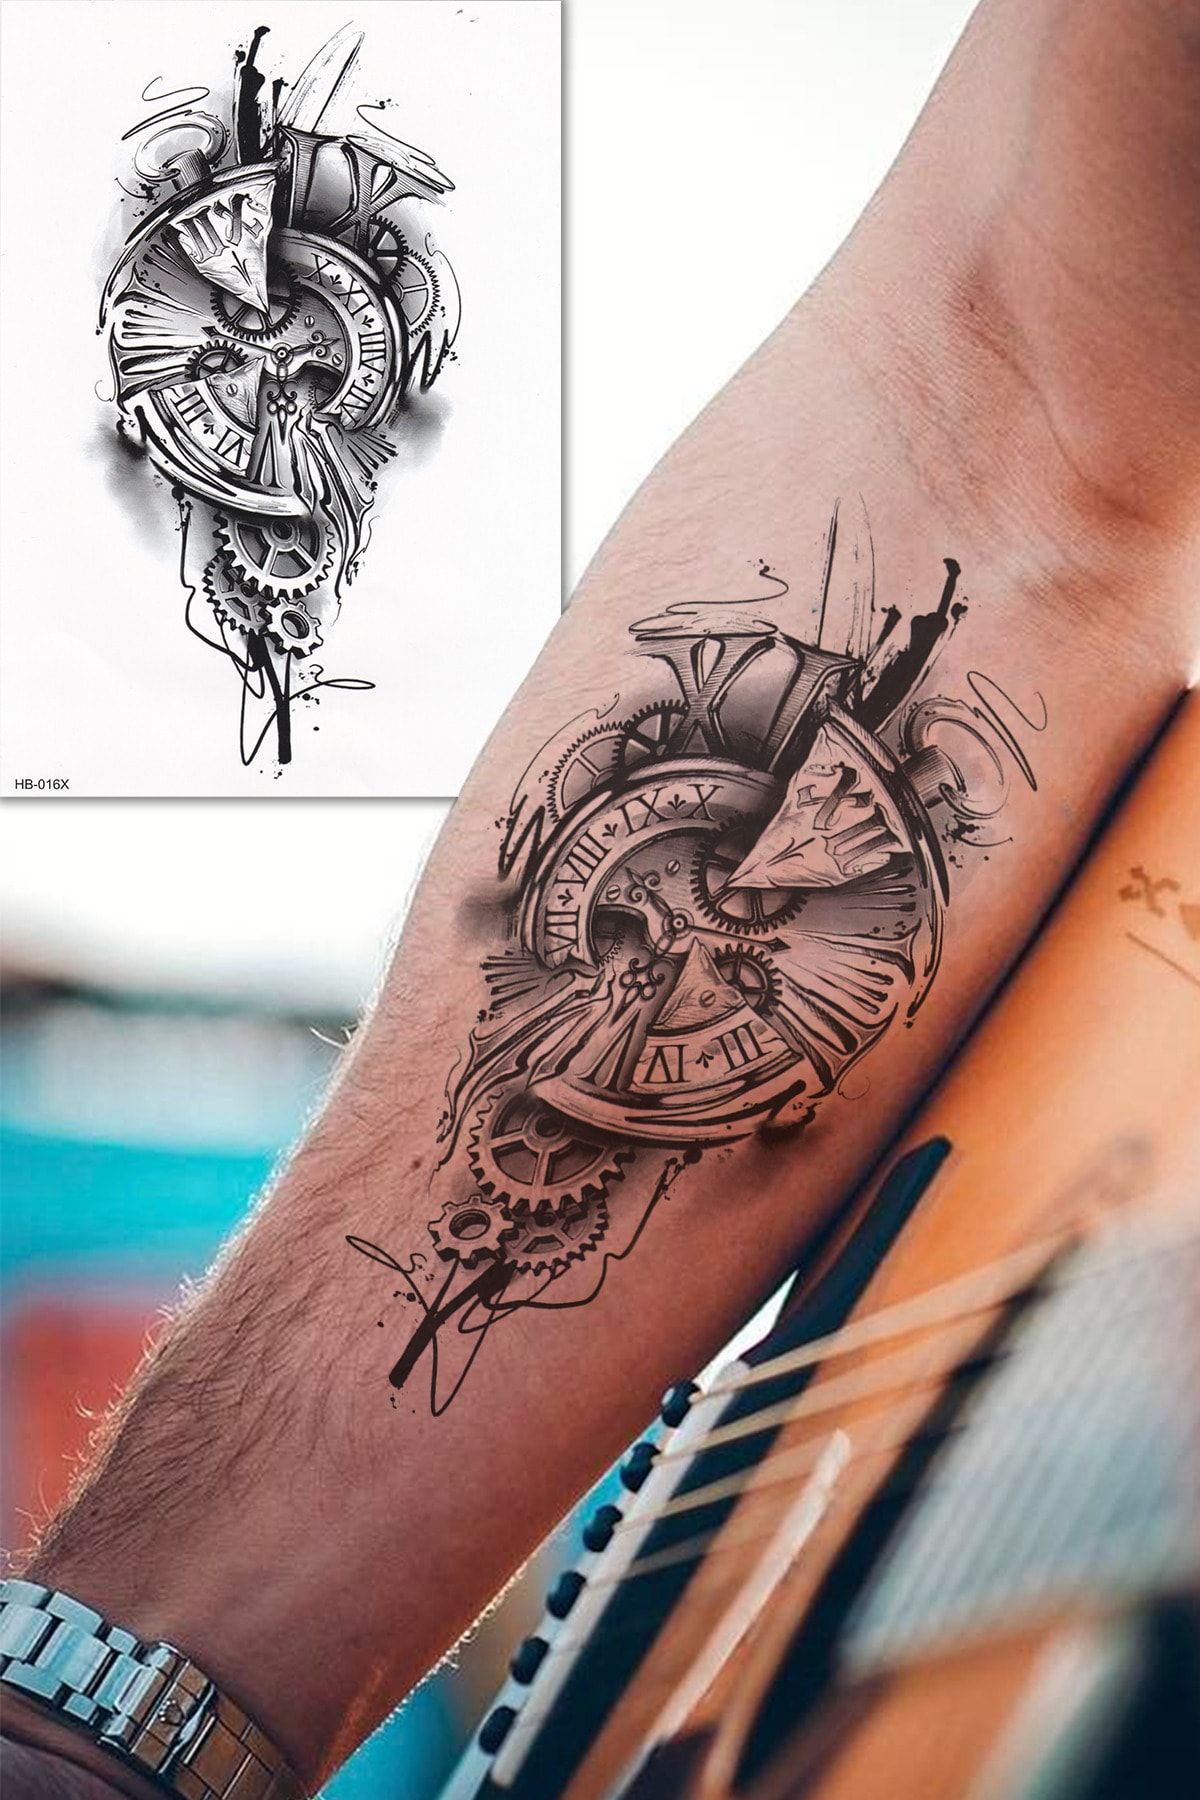 BP Tattoo Gerçek Dövme Görünümlü 3 Boyutlu Saat Dövmesi